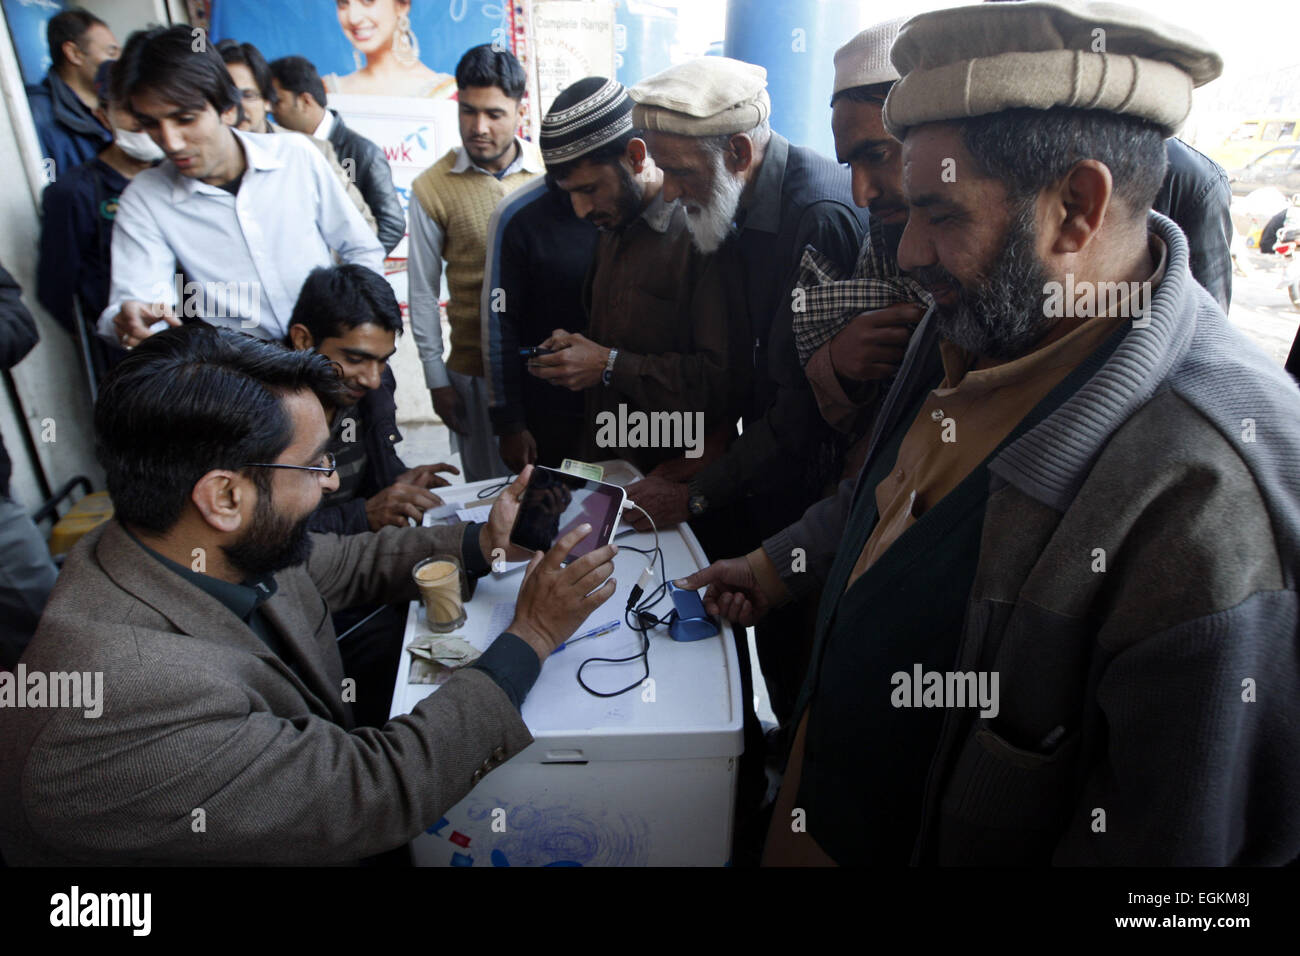 Peshawar. 26 Febbraio, 2015. Le persone hanno le loro impronte scansionate per avere una SIM card cellulare verificato nel nord-ovest del Pakistan a Peshawar, Feb 26, 2015. Pakistani sono stati il rivestimento fino a scansione le loro impronte digitali e verificare le loro identità al fine di mantenere i loro telefoni cellulari, come parte delle misure di sicurezza nella scia del dicembre Peshawar scuola attacco. © Umar Qayyum/Xinhua/Alamy Live News Foto Stock